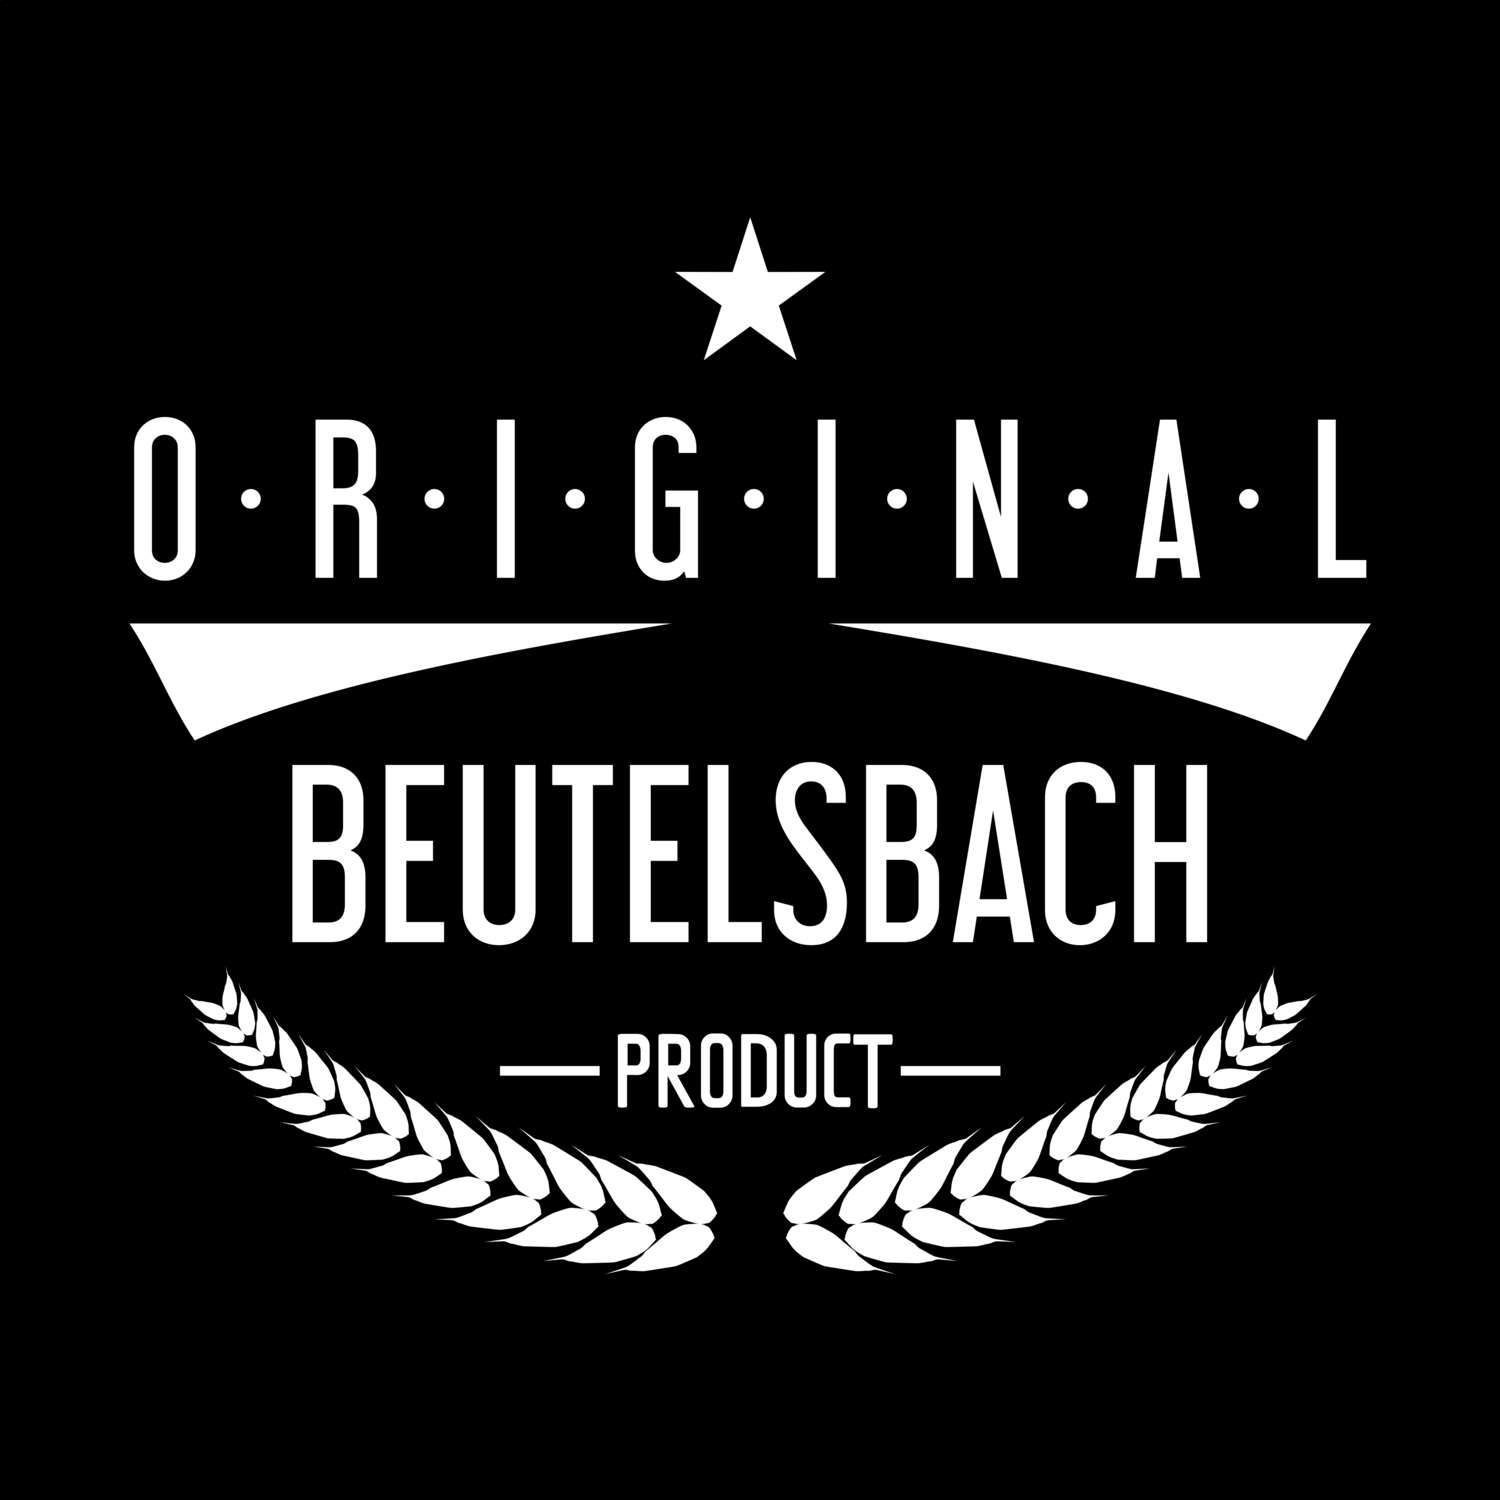 Beutelsbach T-Shirt »Original Product«